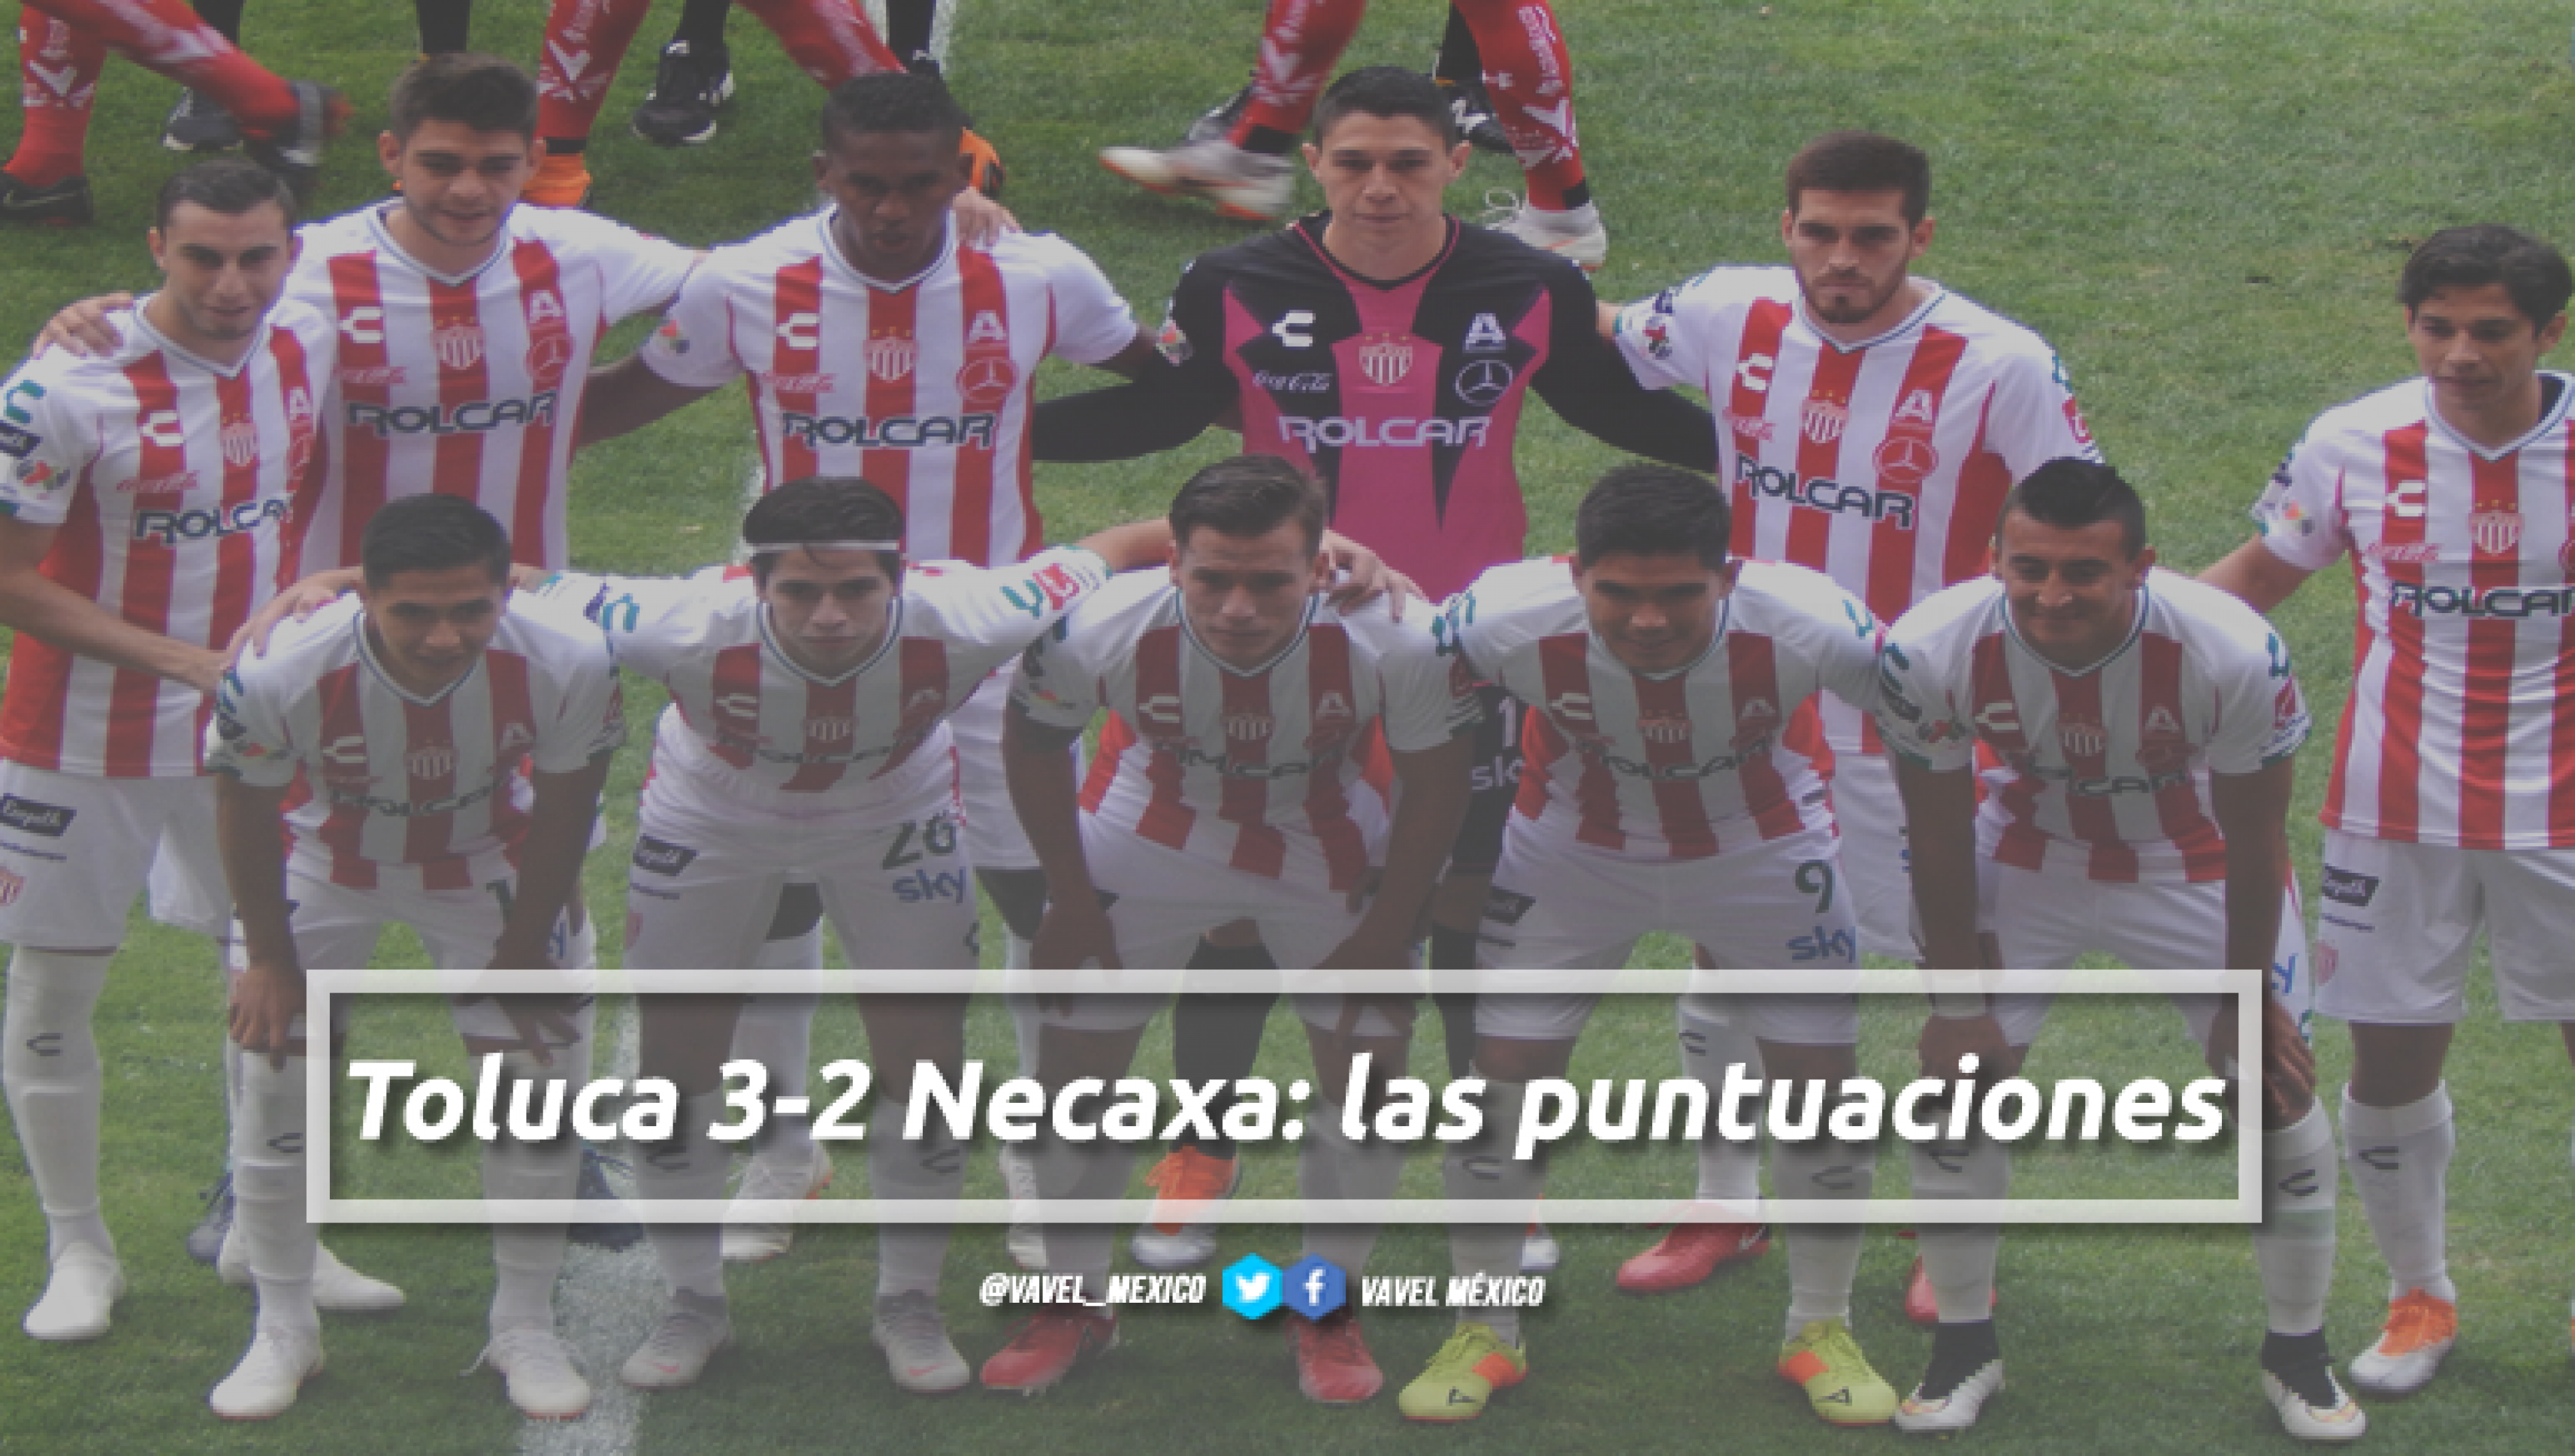 Toluca 3-2 Necaxa: puntuaciones de Necaxa en la jornada 10 de la Liga MX Apertura 2018. Noticias en tiempo real